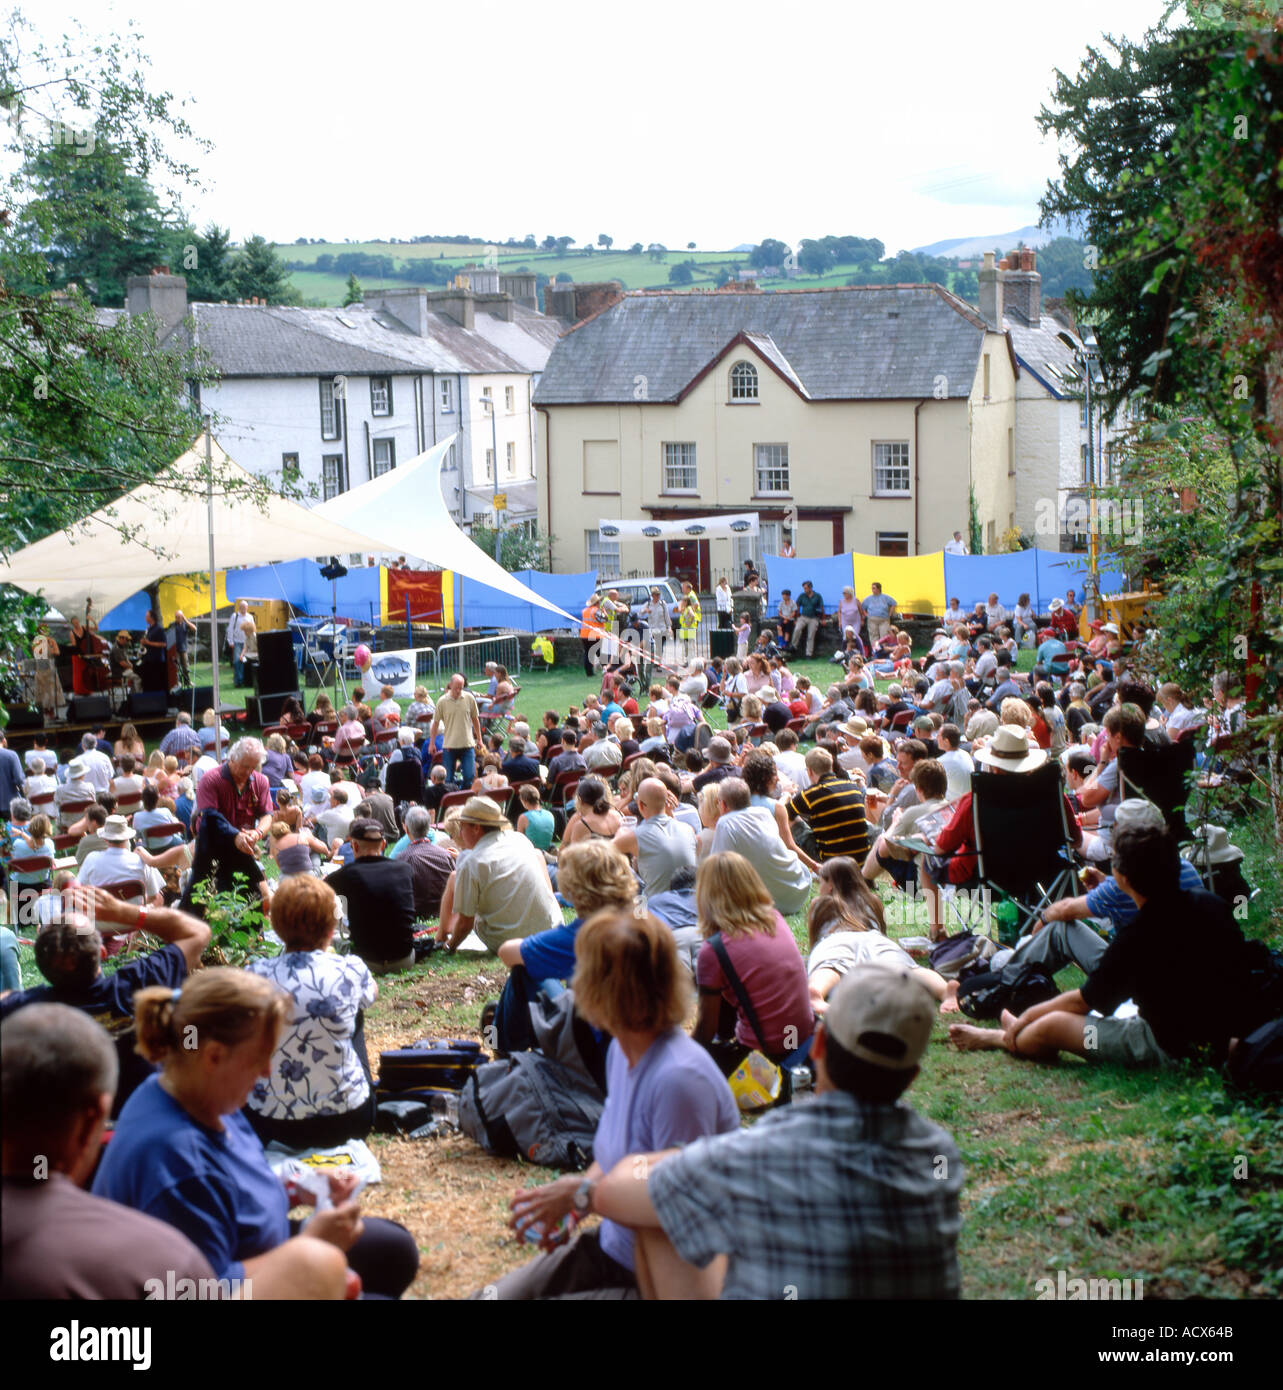 Une foule de gens assis sur l'herbe à écouter de la musique au Festival de jazz annuel de Brecon, Wales UK KATHY DEWITT Banque D'Images